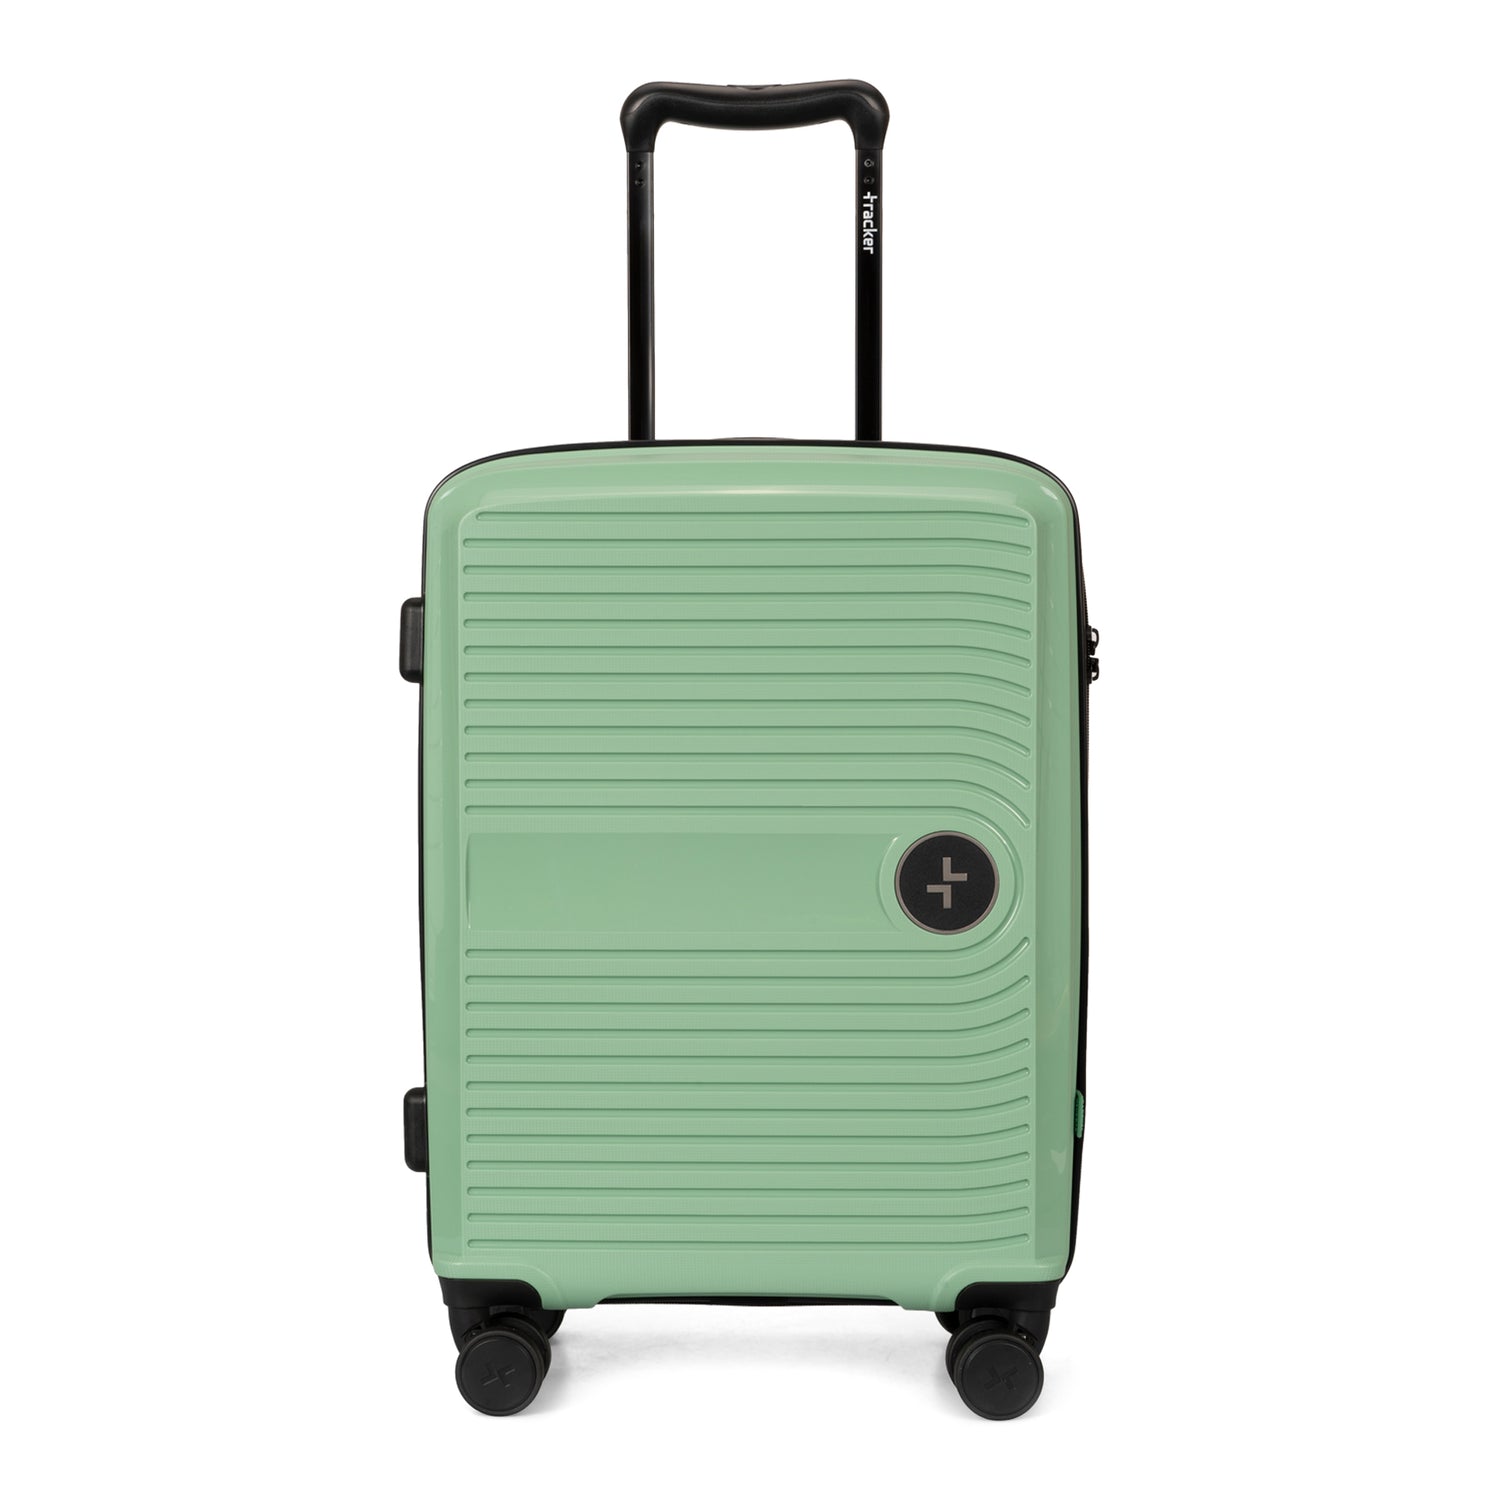 Dynamo Hardside 22" Carry-On Luggage - Bentley